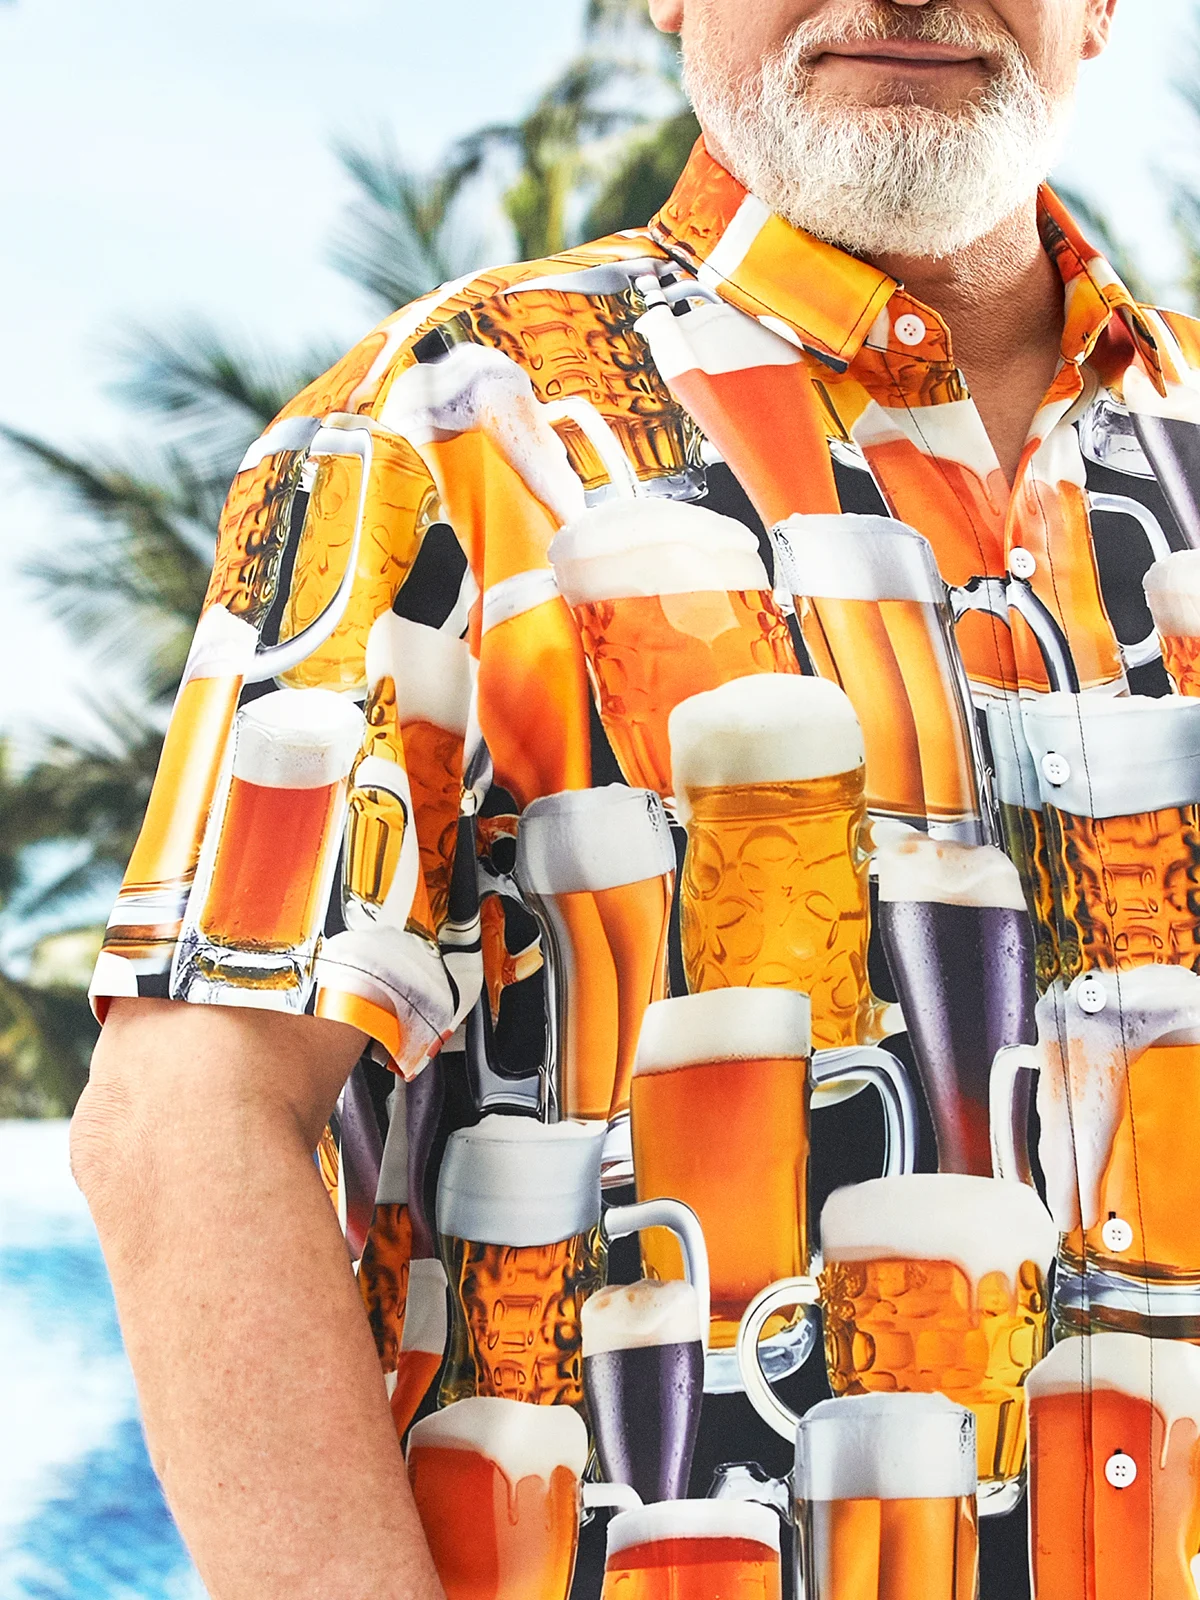 Hardaddy Big Size Beer Chest Pocket Short Sleeve Hawaiian Shirt